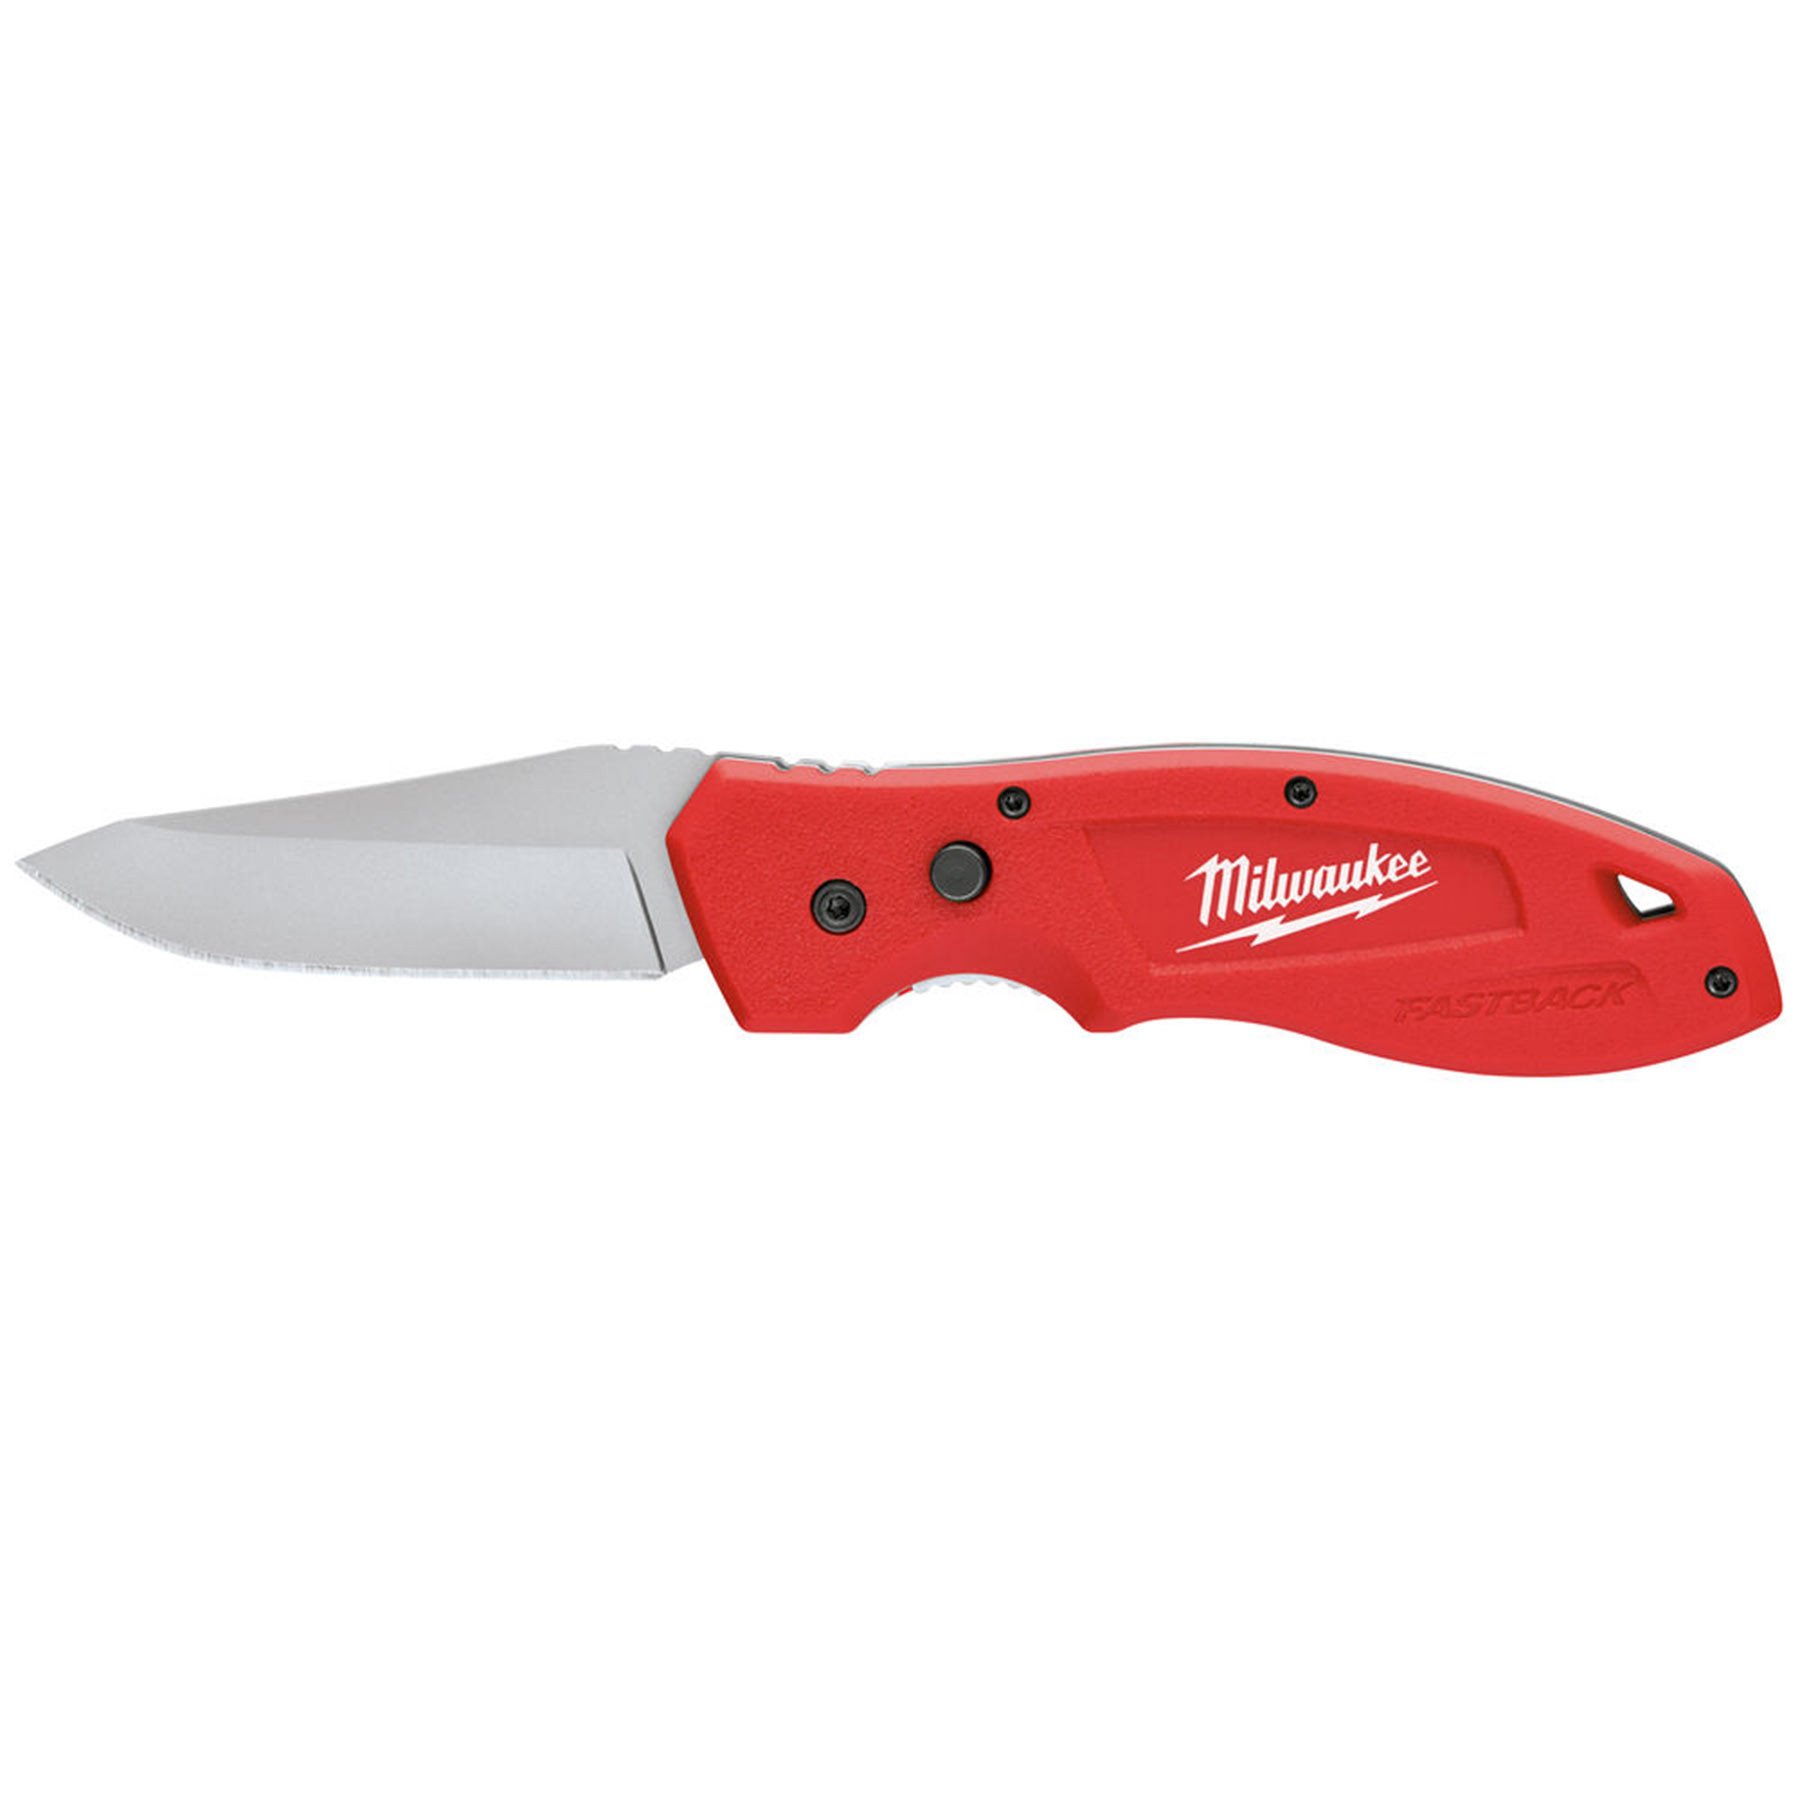 密尔沃基48221990快背折叠刀与按压和翻转操作和可磨不锈钢刀片